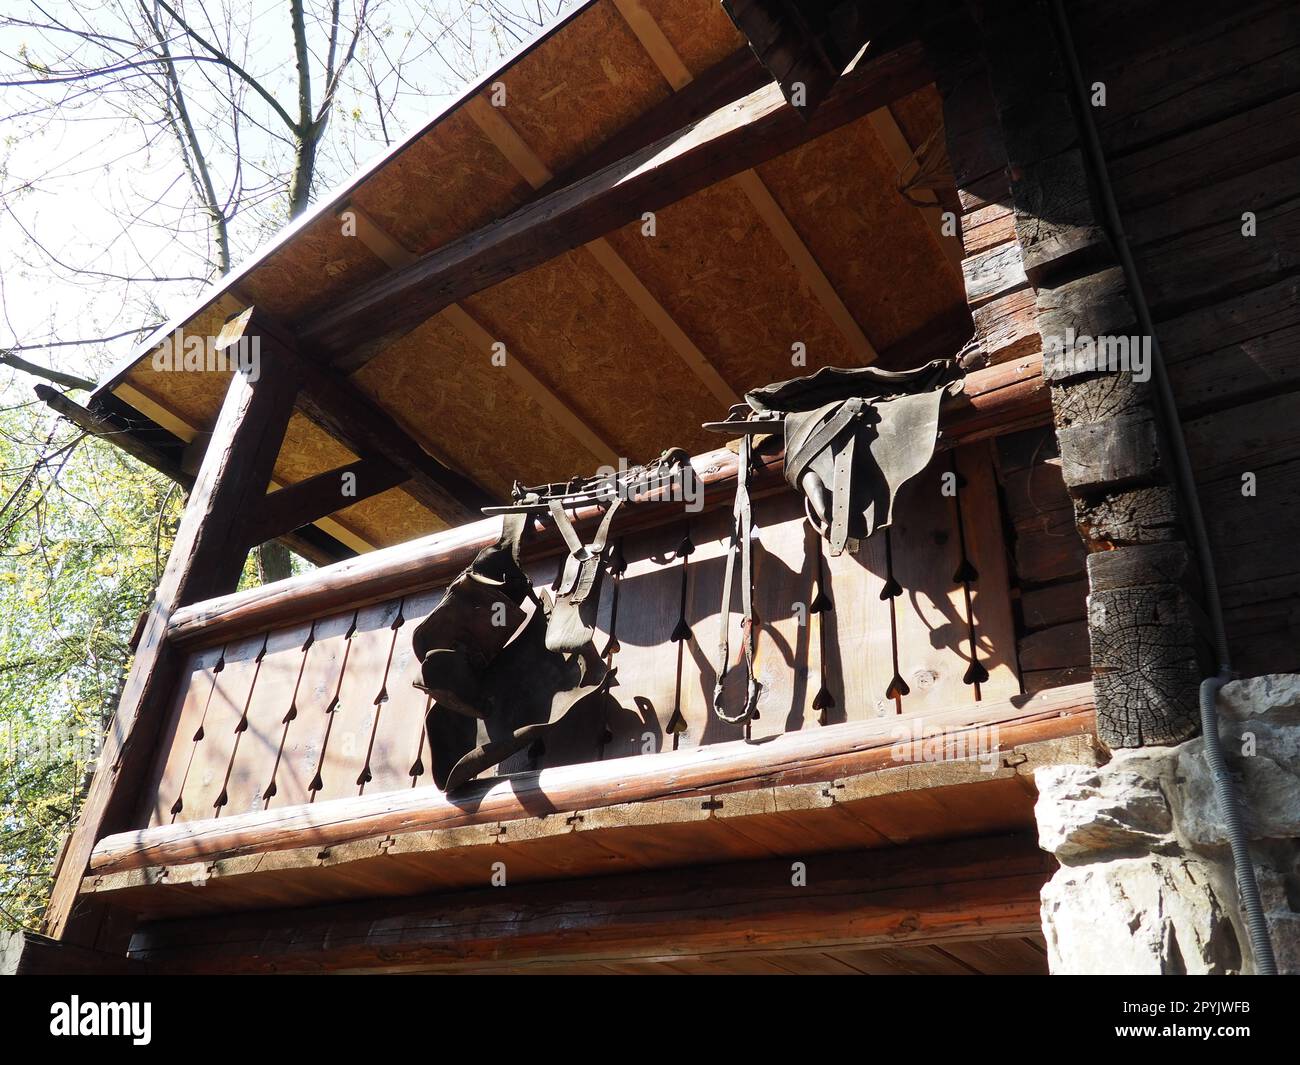 Am Geländer der Holzhausterrasse hängen ein Ledersattel, ein Zaumzeug und Steigbügel. Stanisici, Bijelina, Bosnien und Herzegowina. Pferdesport oder Landwirtschaft und Tierhaltung Stockfoto